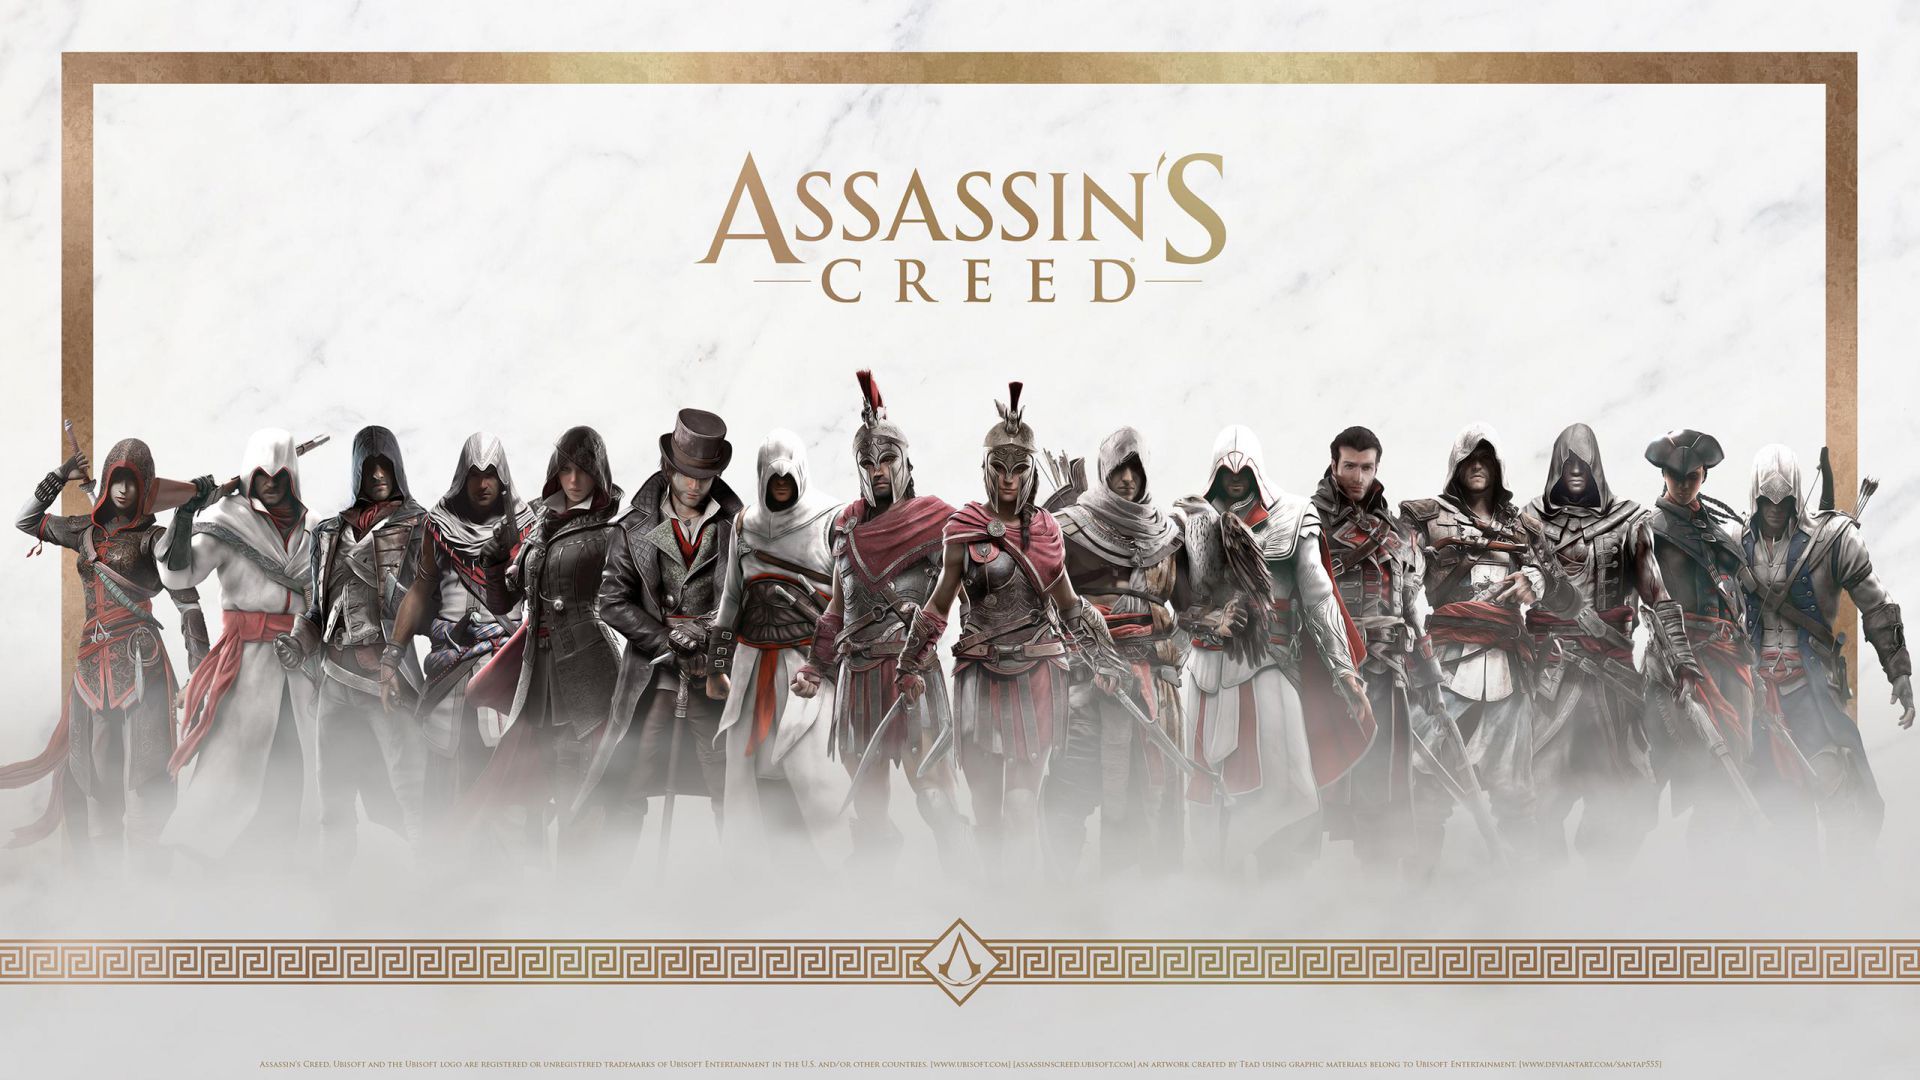 La Importancia De Assassins Creed Doce Años Del Inicio De Todo - assassin codes roblox february 2017